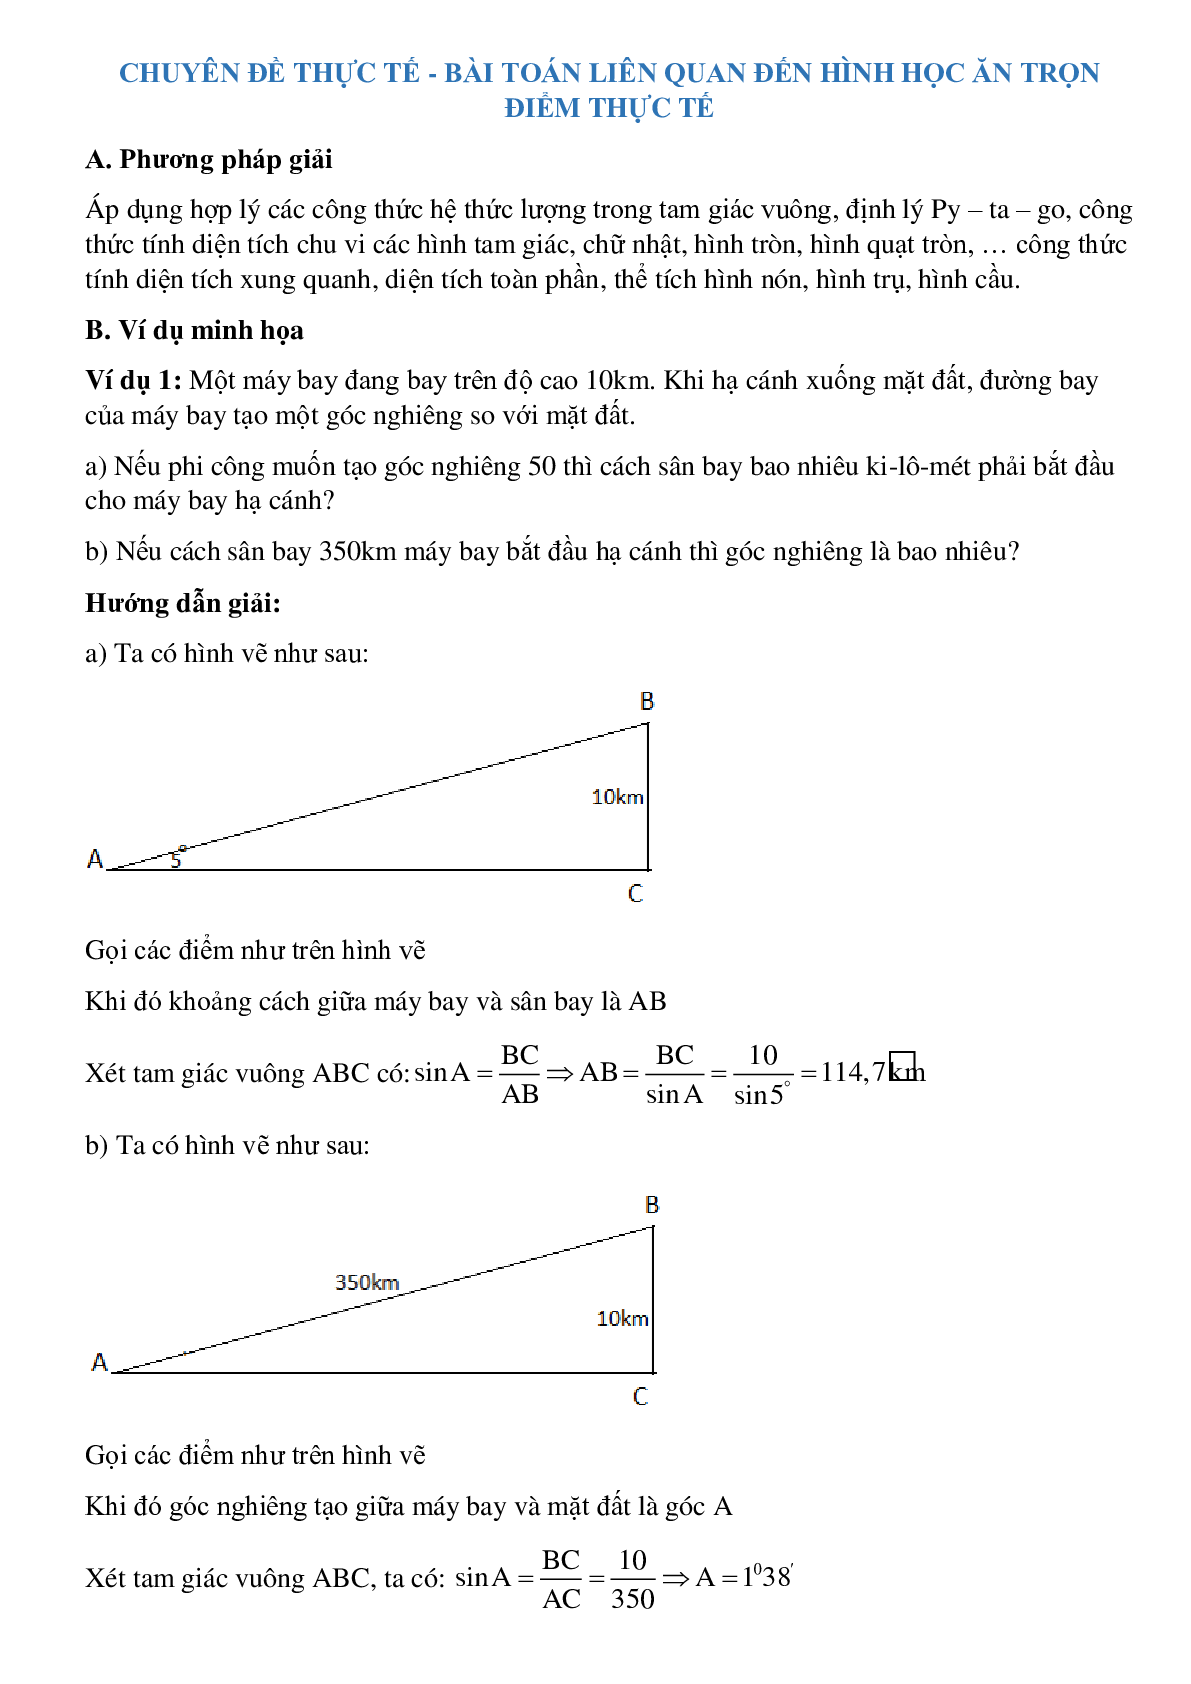 Bài toán thực tế sử dụng yếu tố hình học (trang 1)